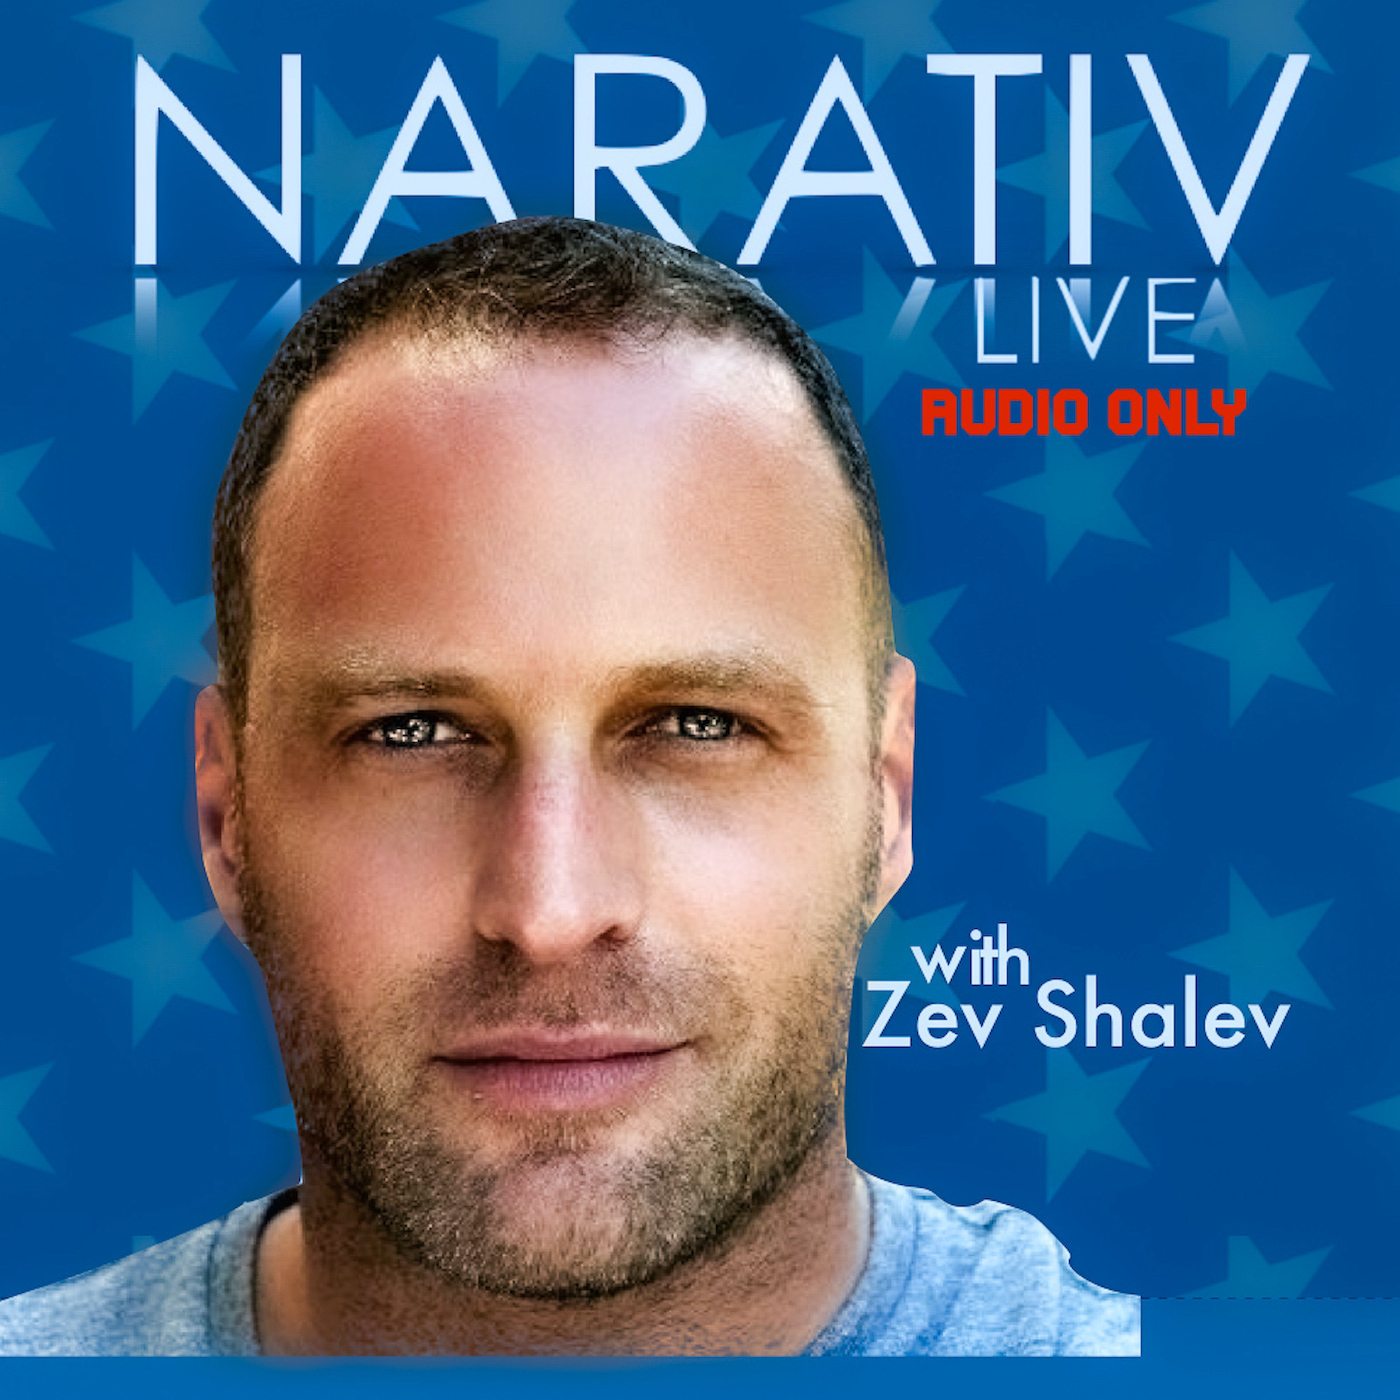 Narativ Live with Zev Shalev